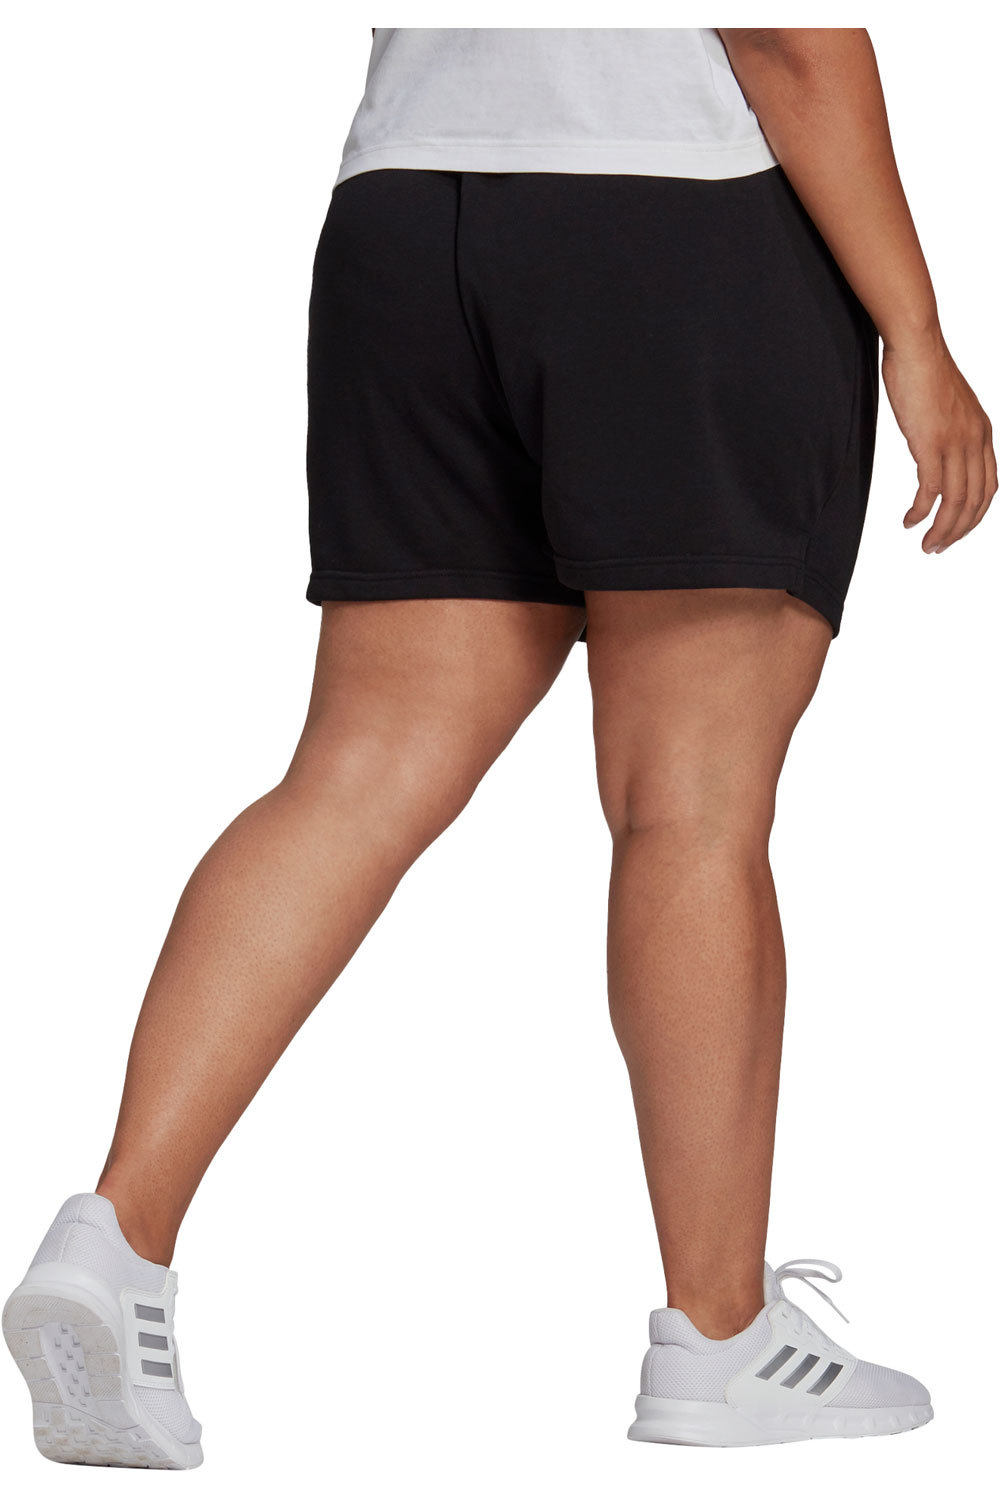 adidas pantalón corto deporte mujer Essentials Slim Logo (Tallas grandes) vista trasera